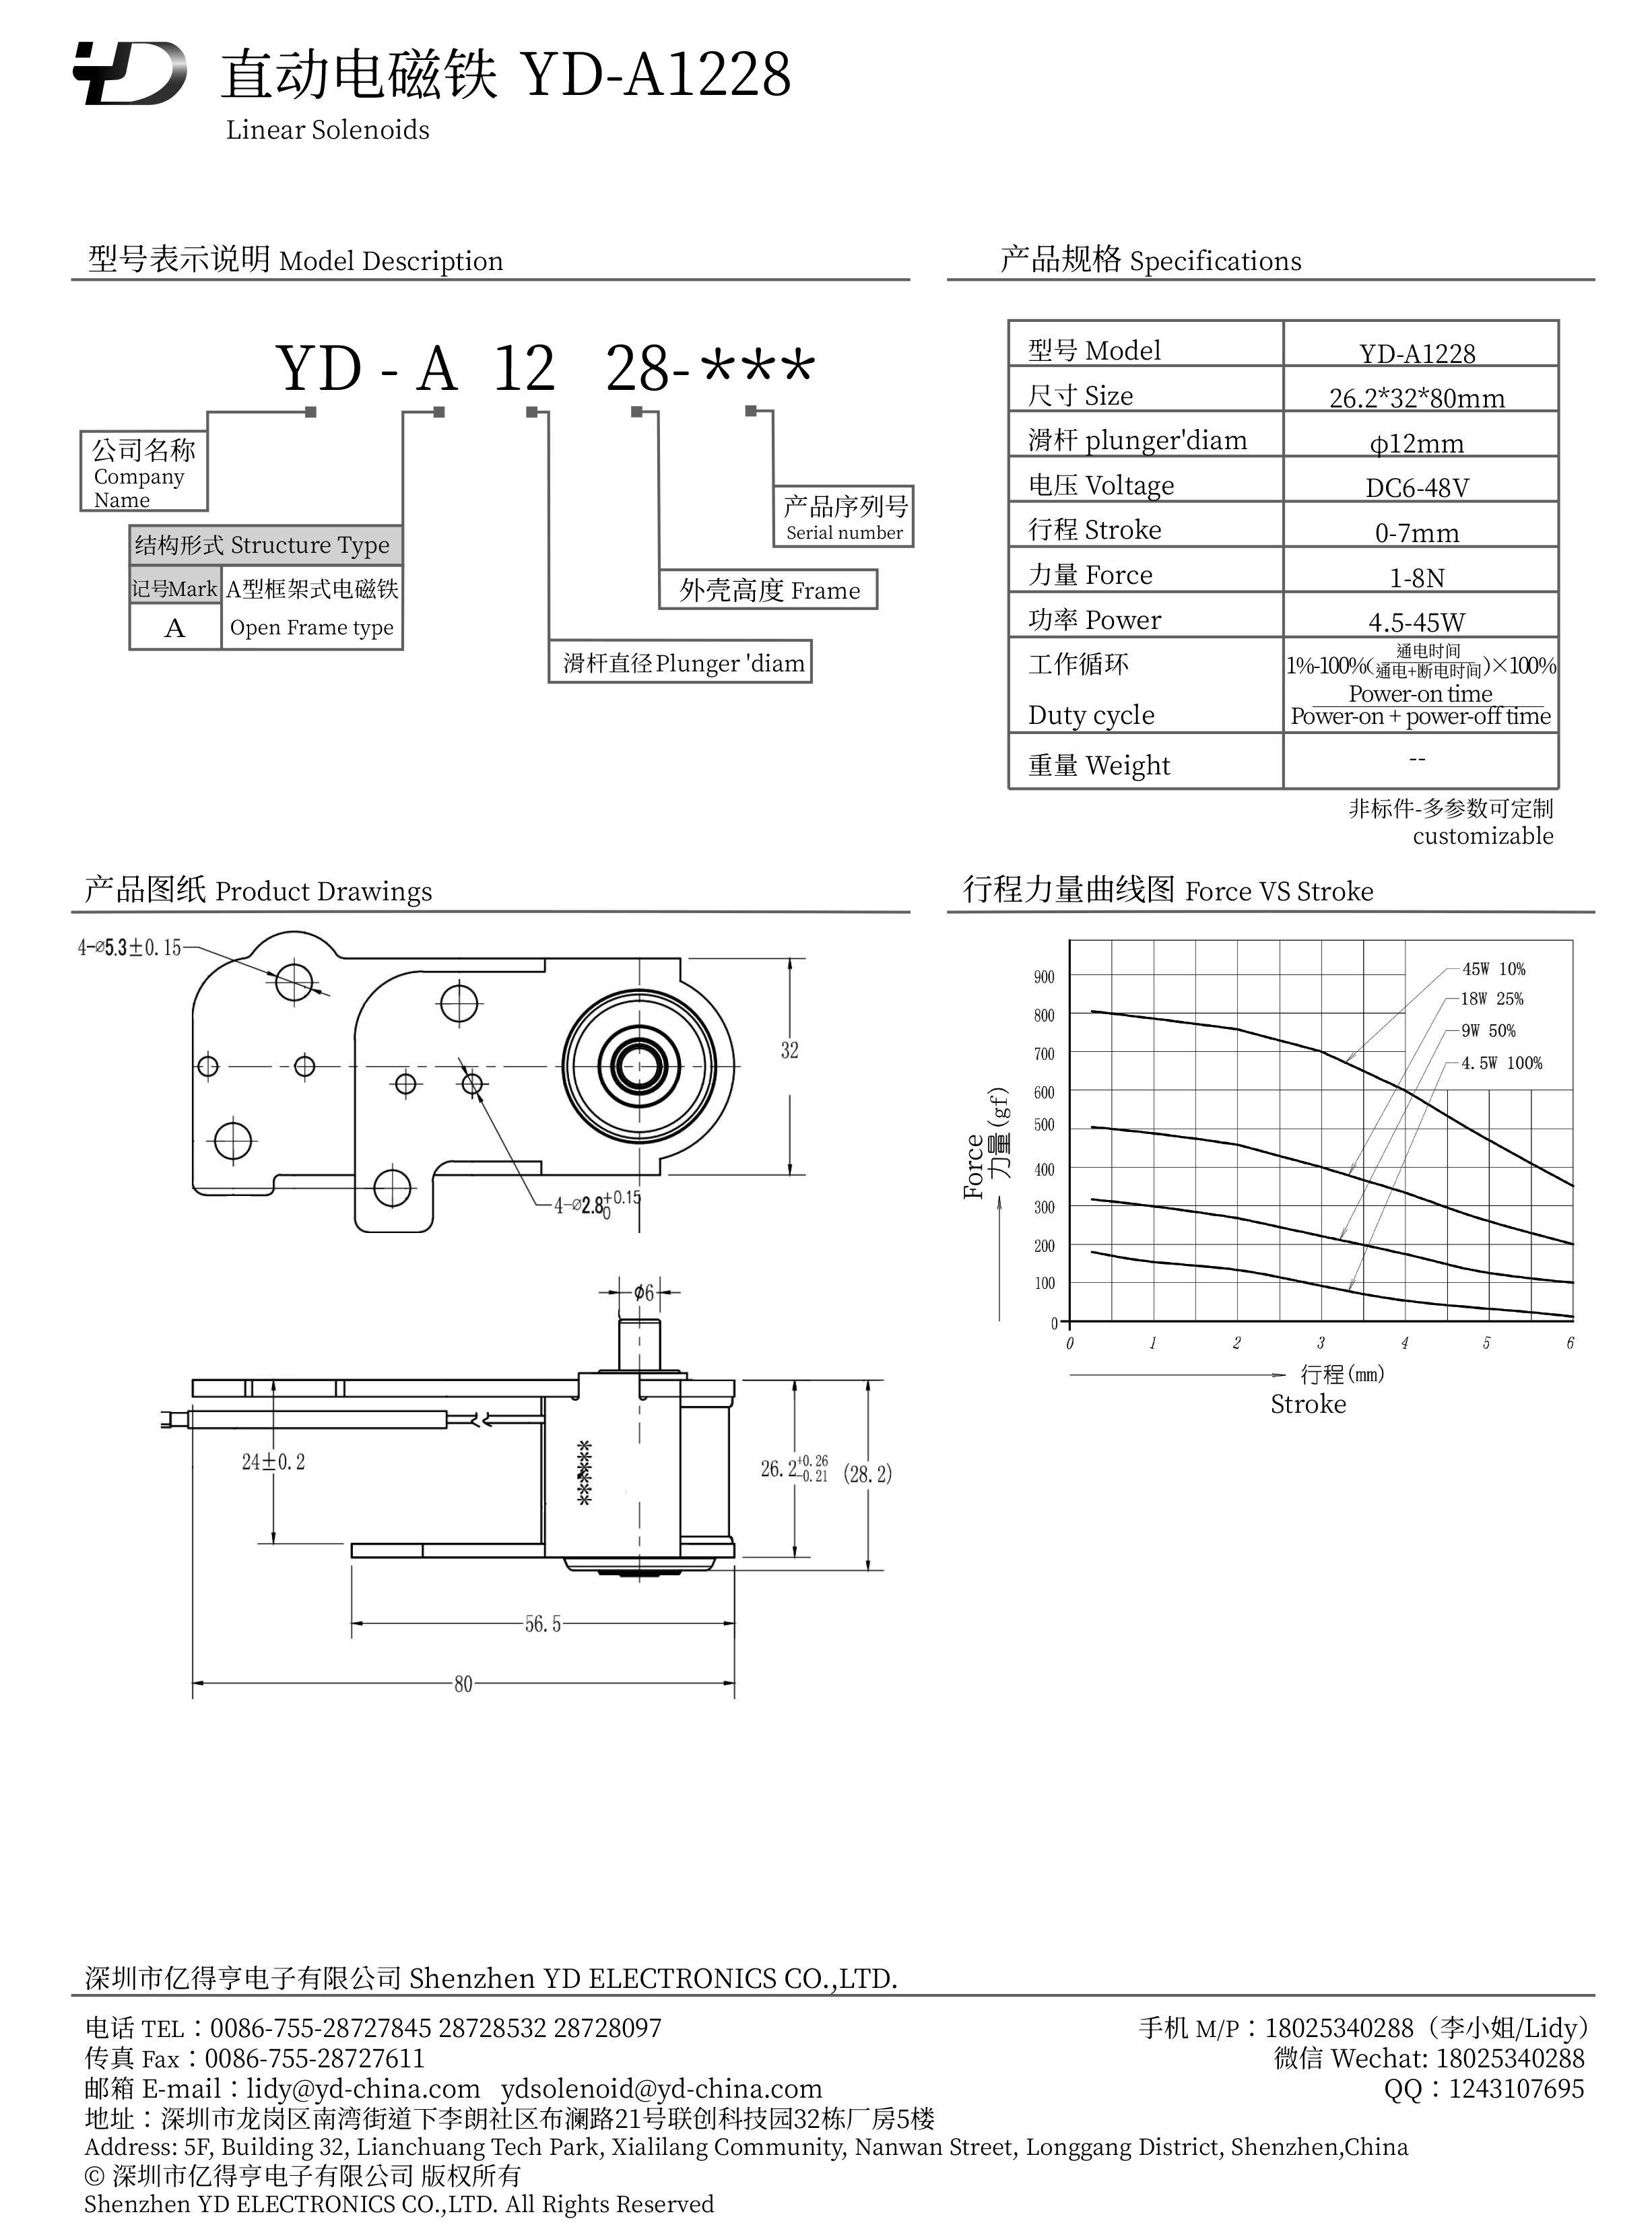 YD-A1228-PDF.jpg